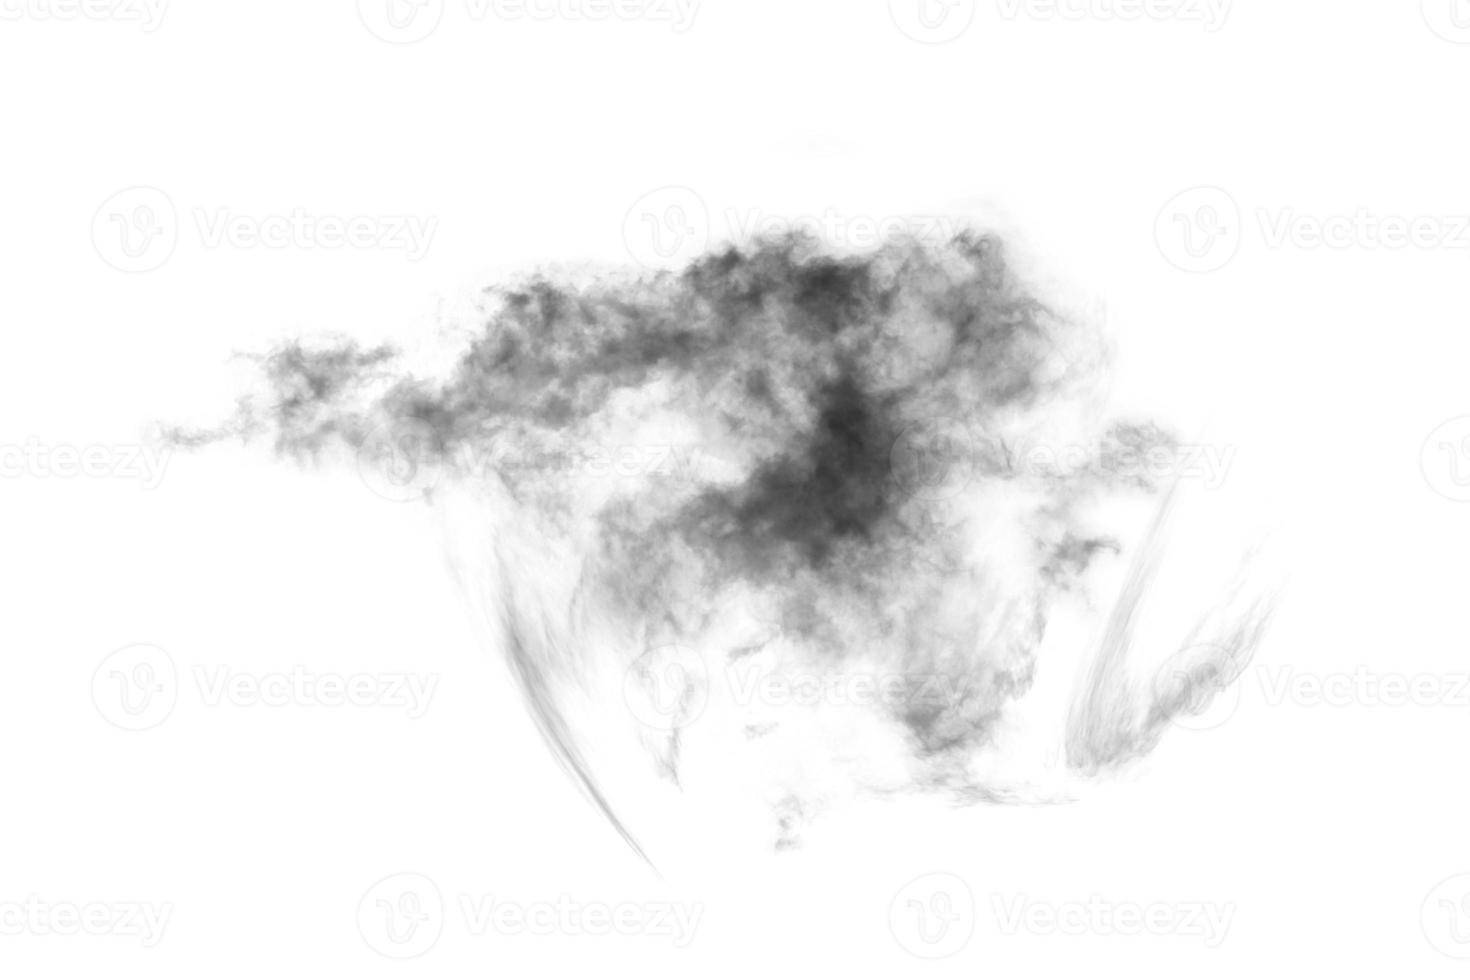 nuage isolé sur fond blanc, fumée texturée, noir abstrait photo